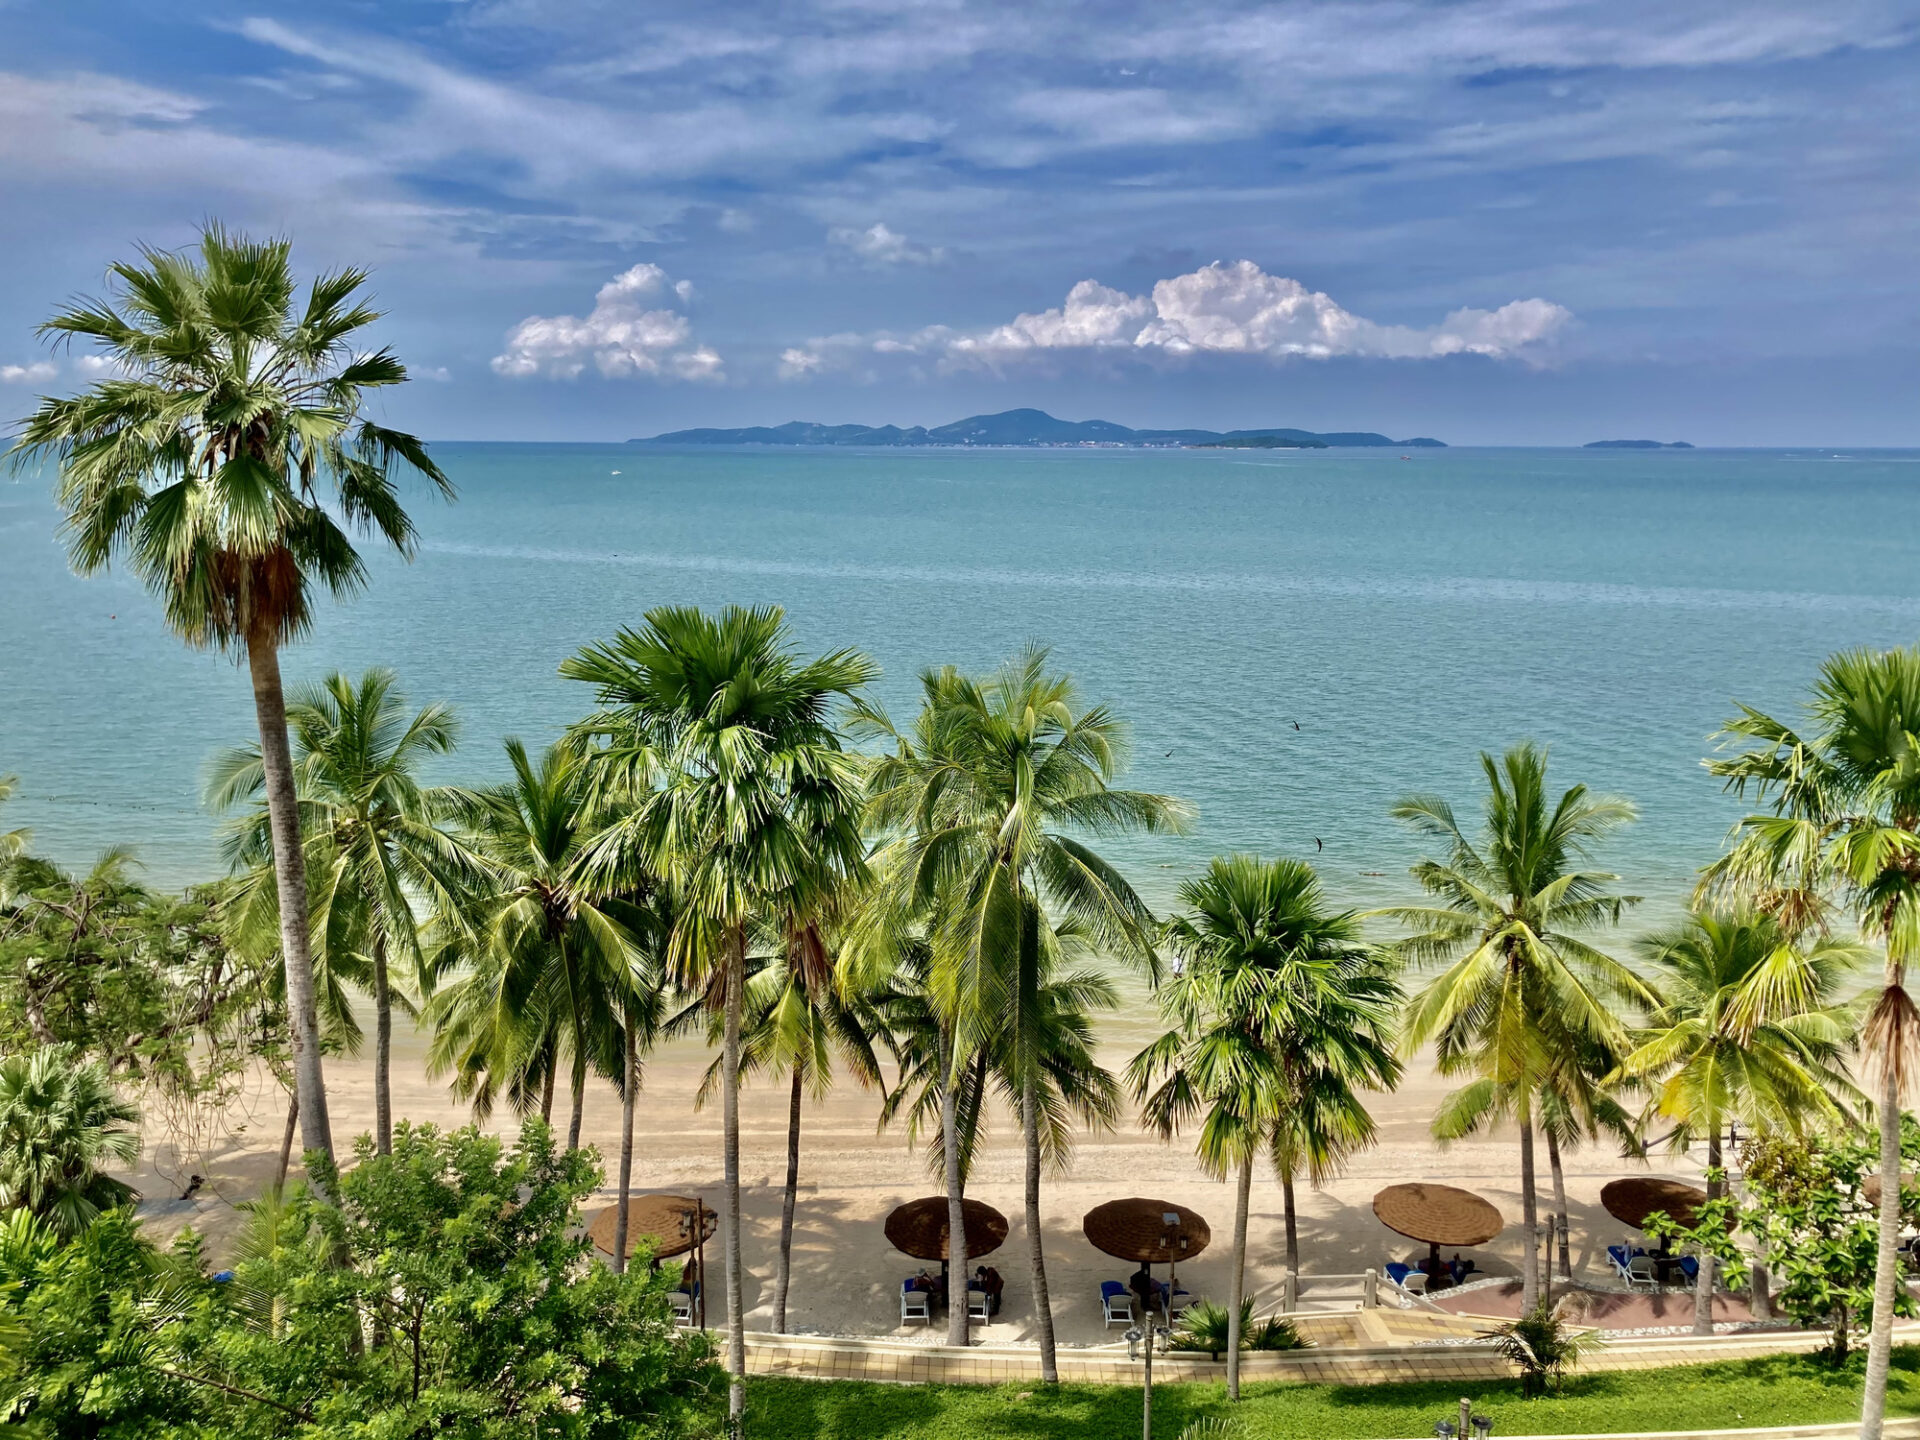  Hua Hin strand med palmetræer og oceanudsigt